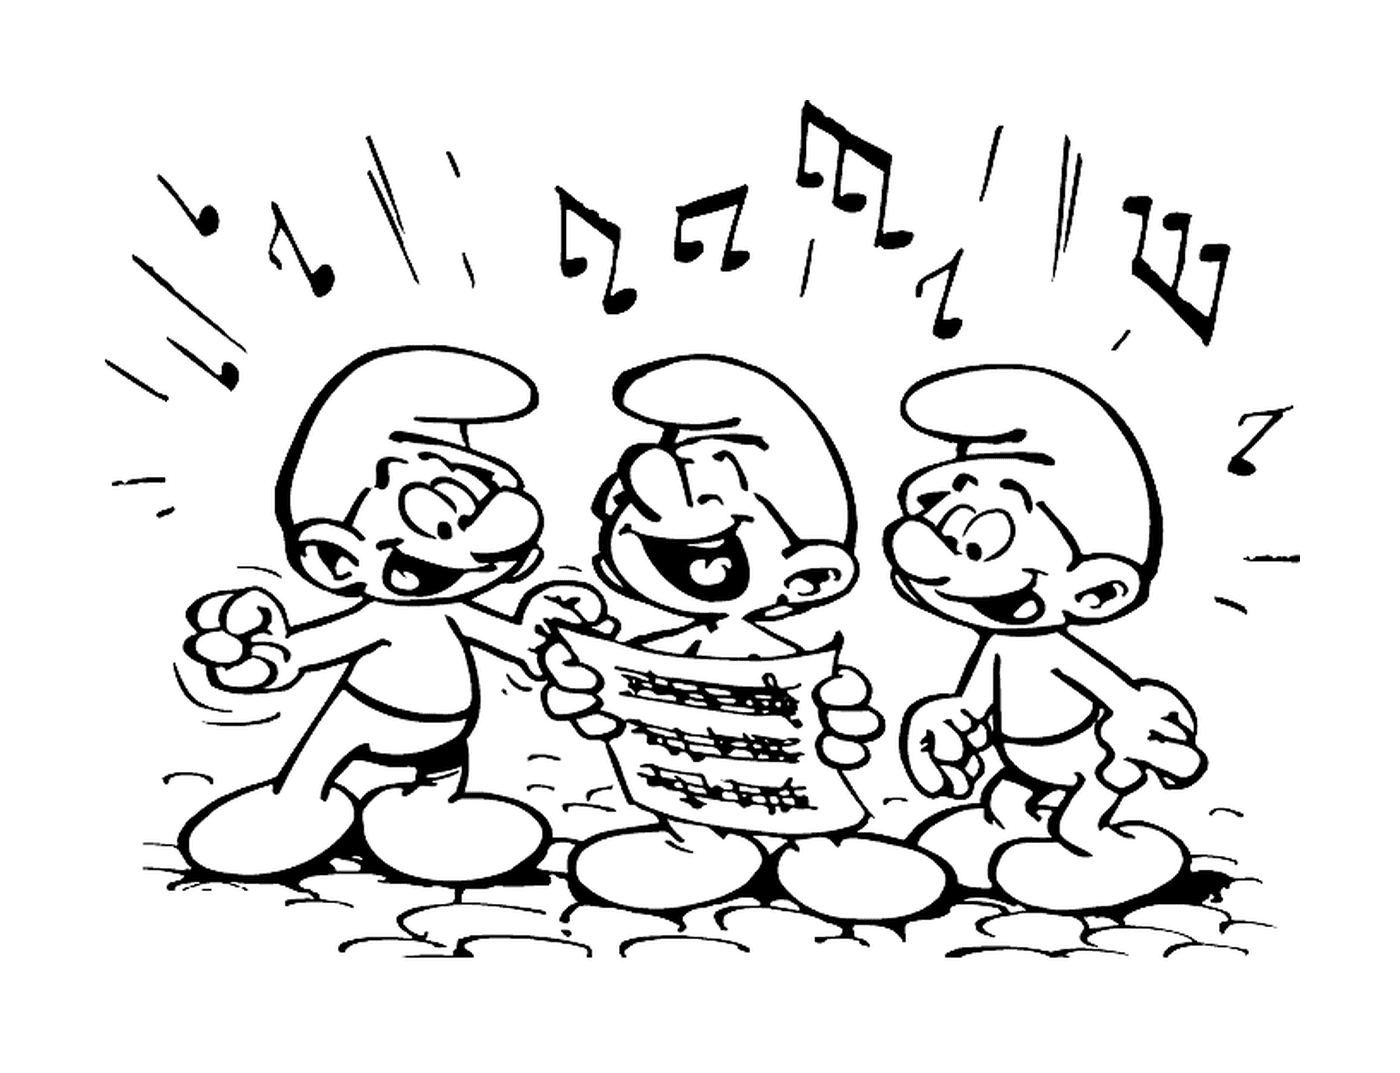  Drei Schlümpfe singen harmonisch 